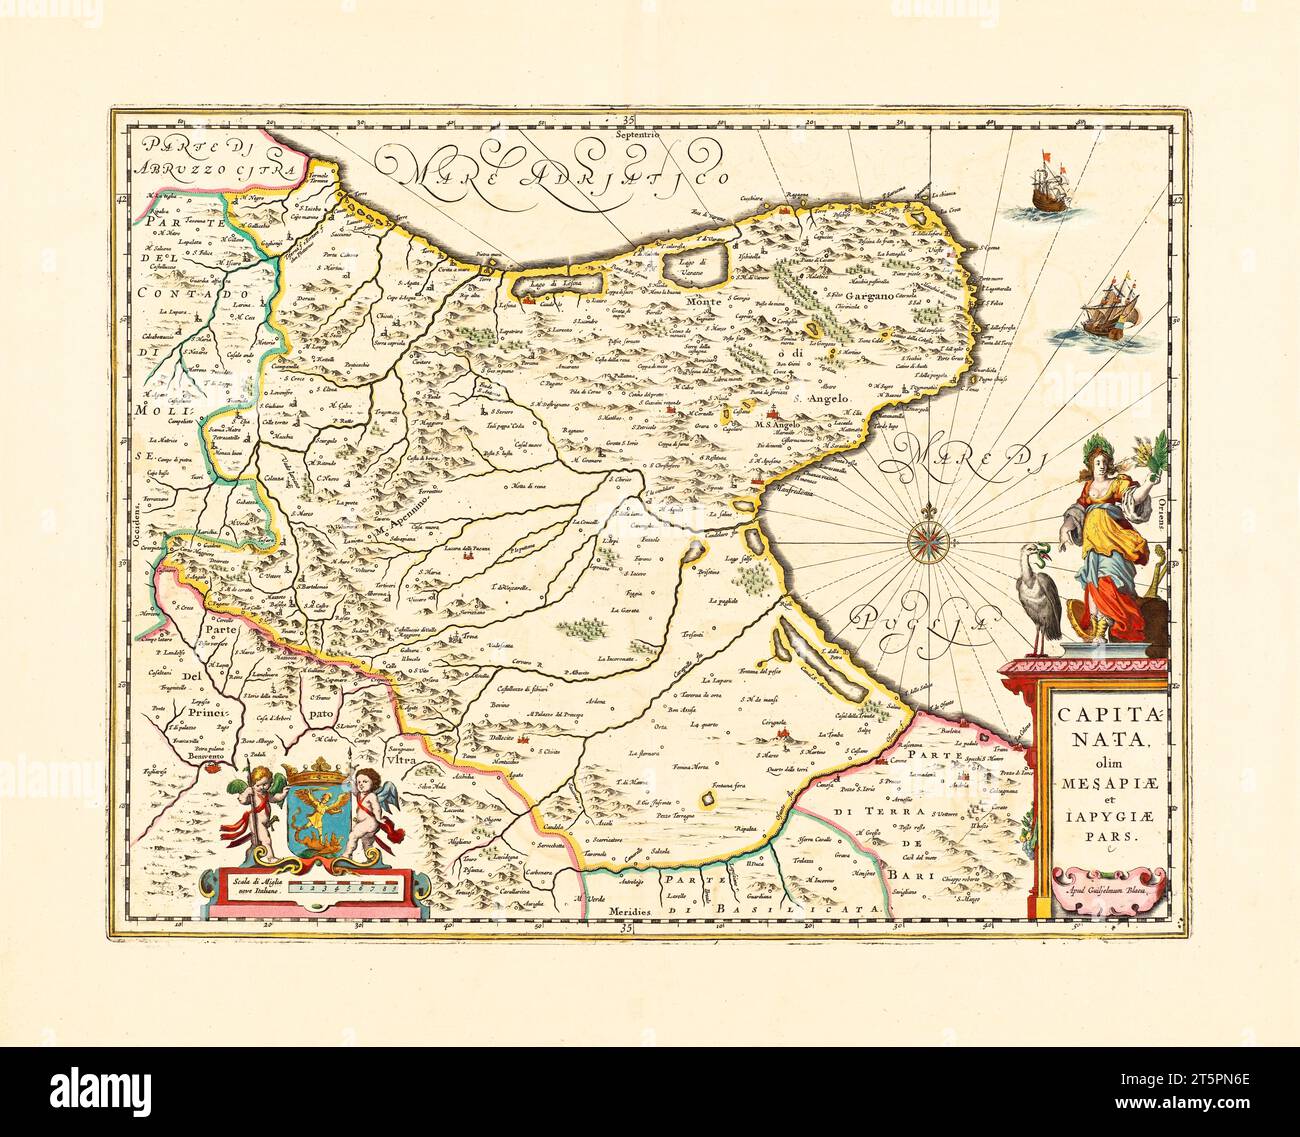 Vecchia mappa della regione storica di Capitanata, Italia. Di Jansonn, publ. ca. 1647 Foto Stock